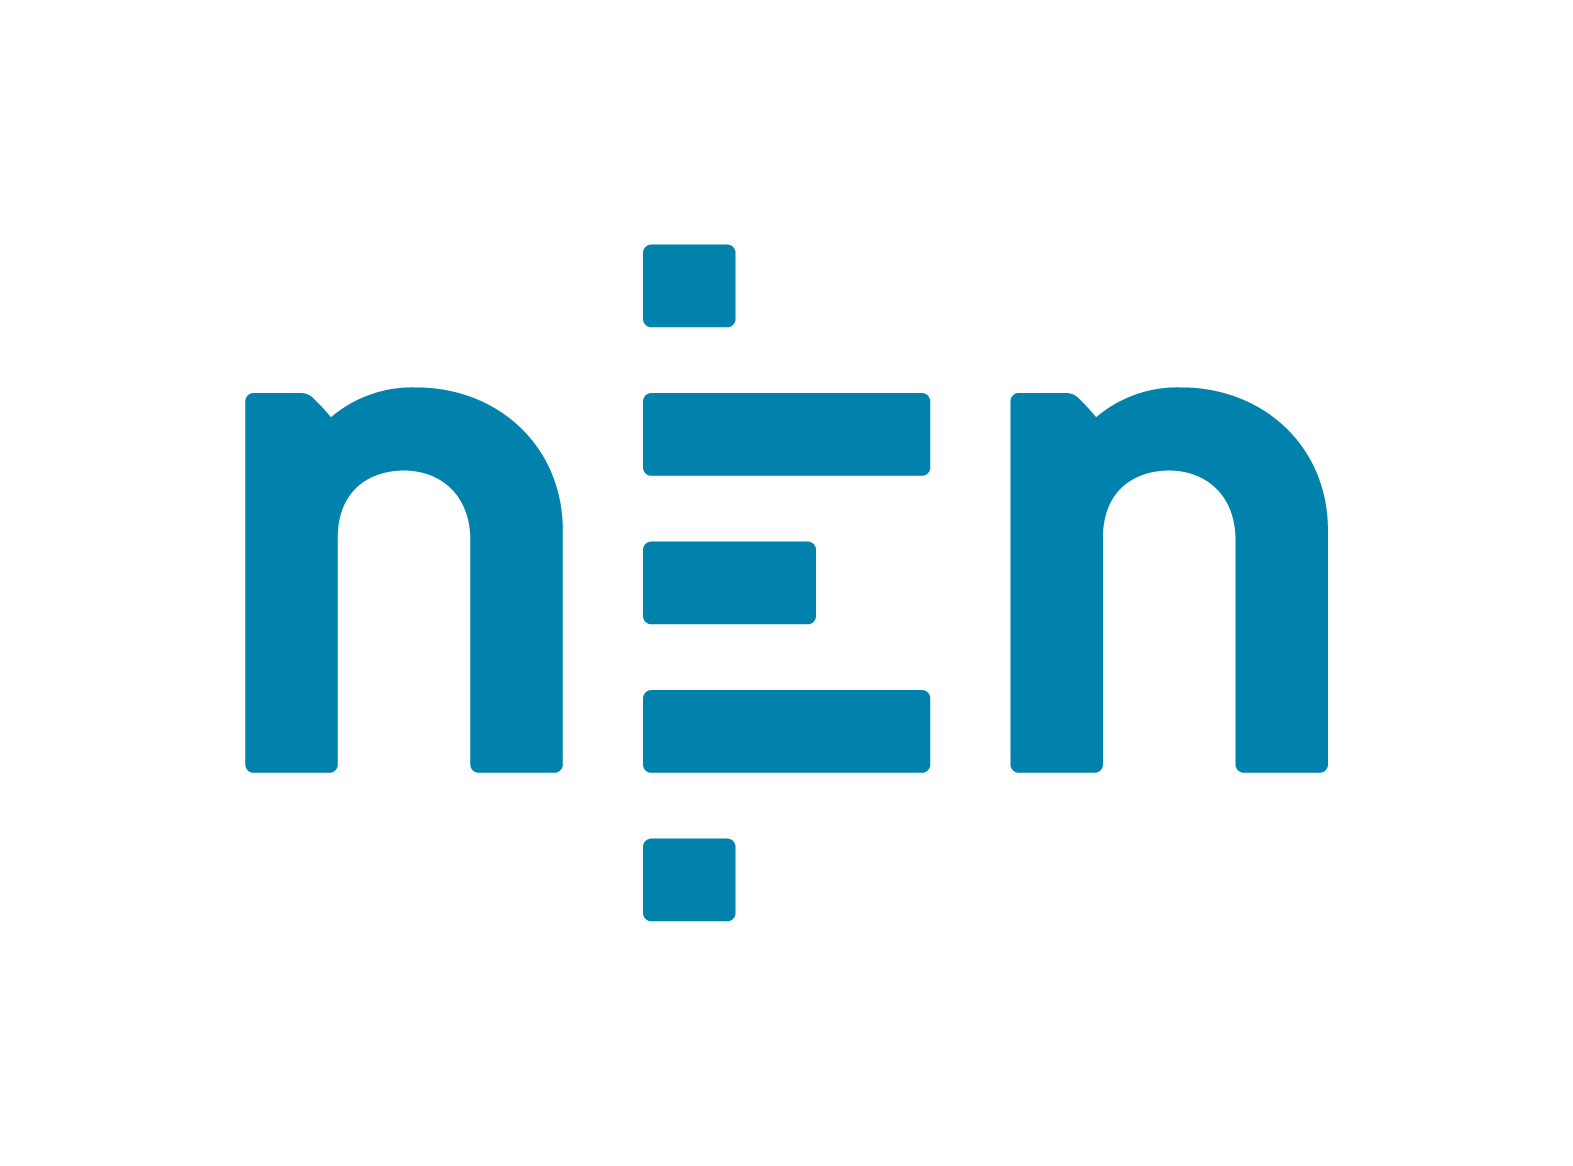 Logo NEN